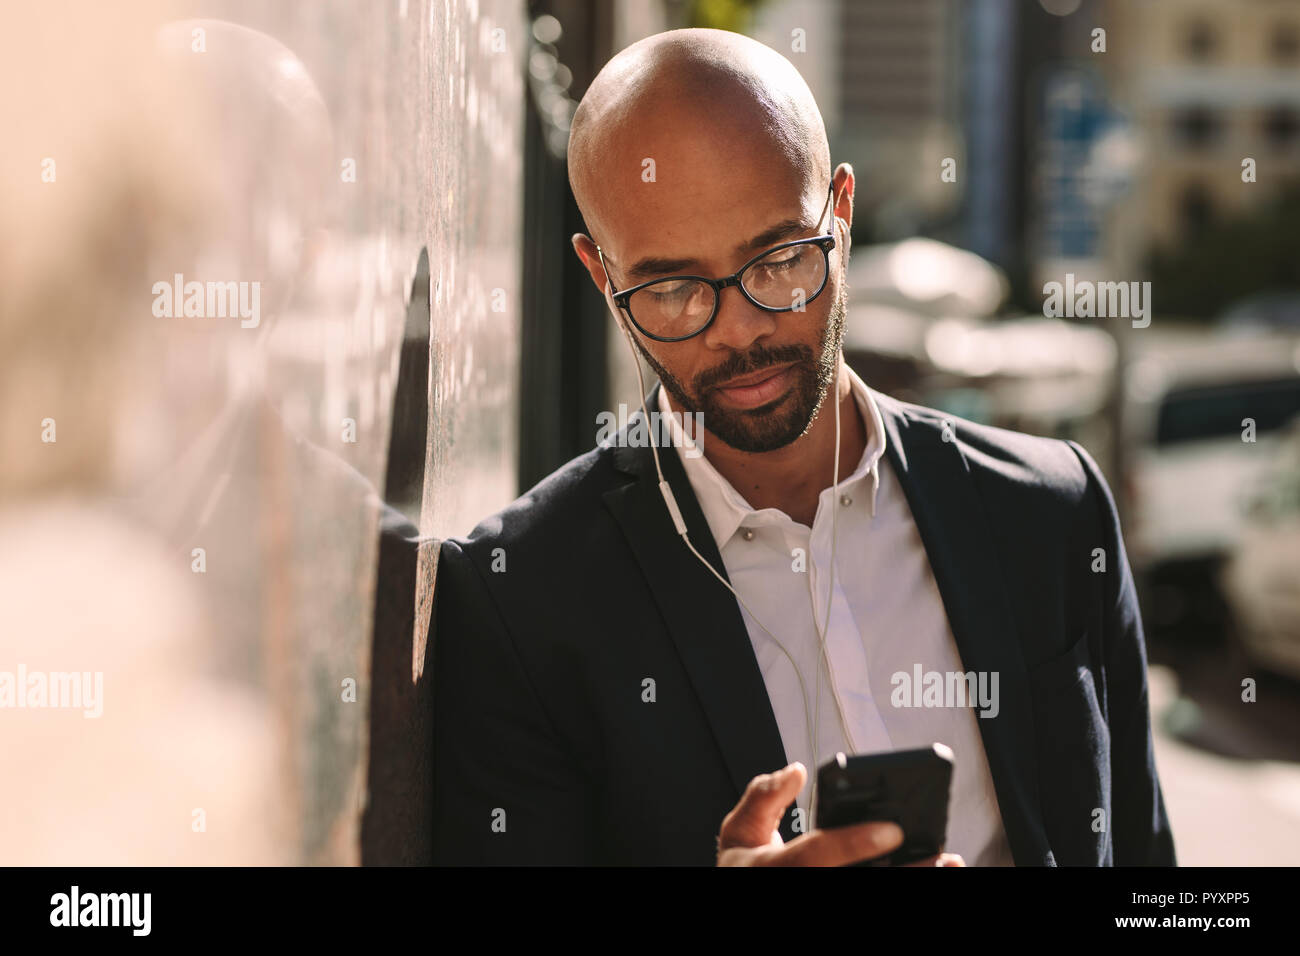 Imprenditore africano il pendolarismo con uno smartphone. Uomo calvo in tuta che indossa gli auricolari tramite telefono cellulare appoggiato alla parete all'esterno. Foto Stock